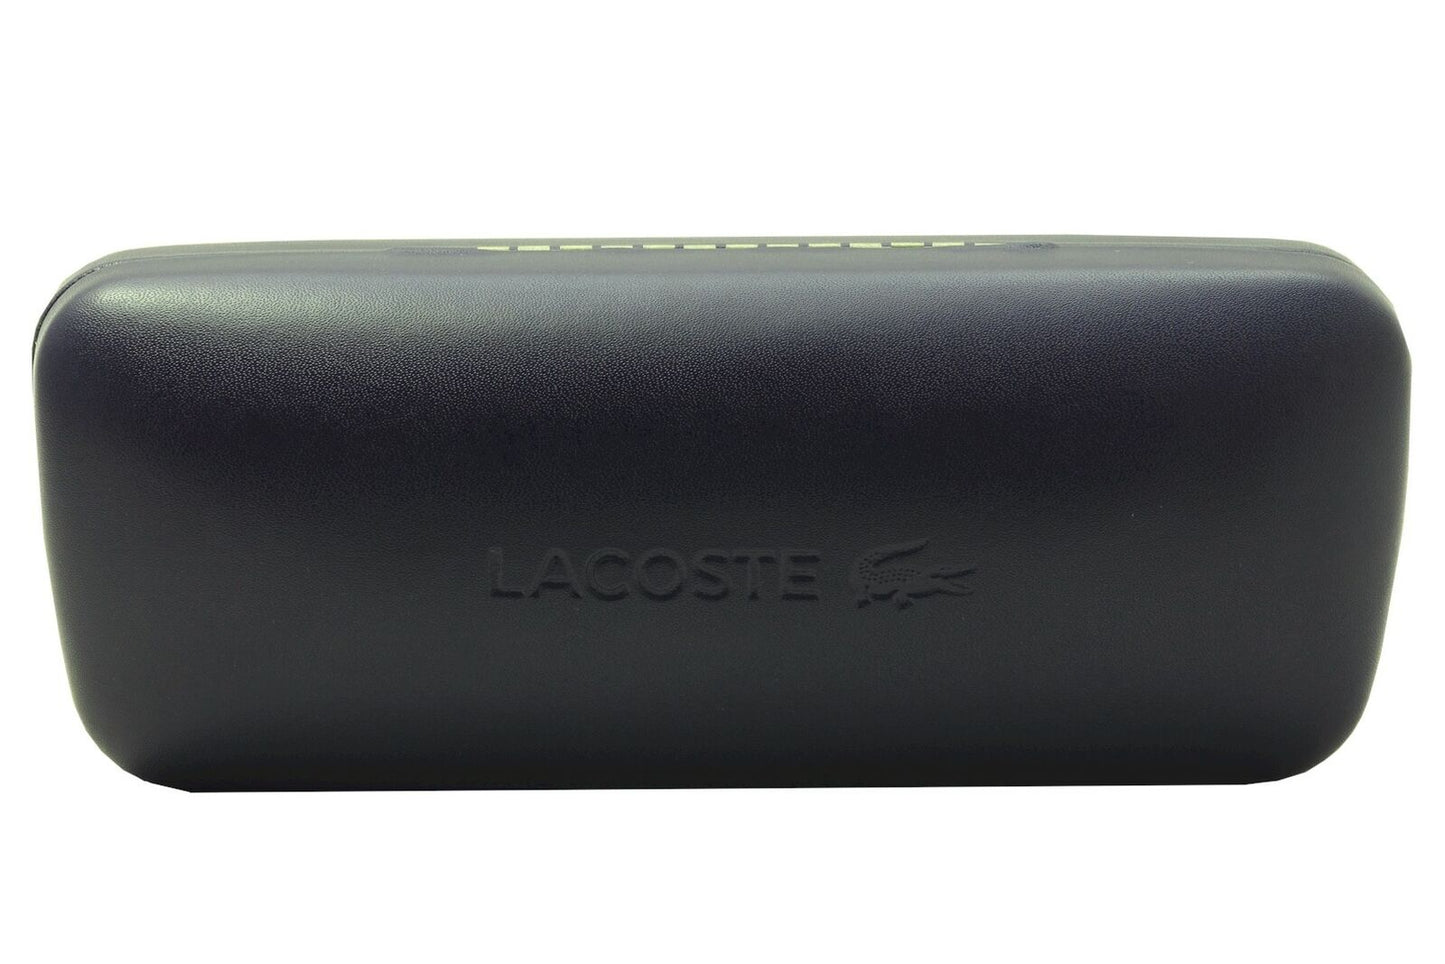 Lacoste L989S-301 62mm New Sunglasses